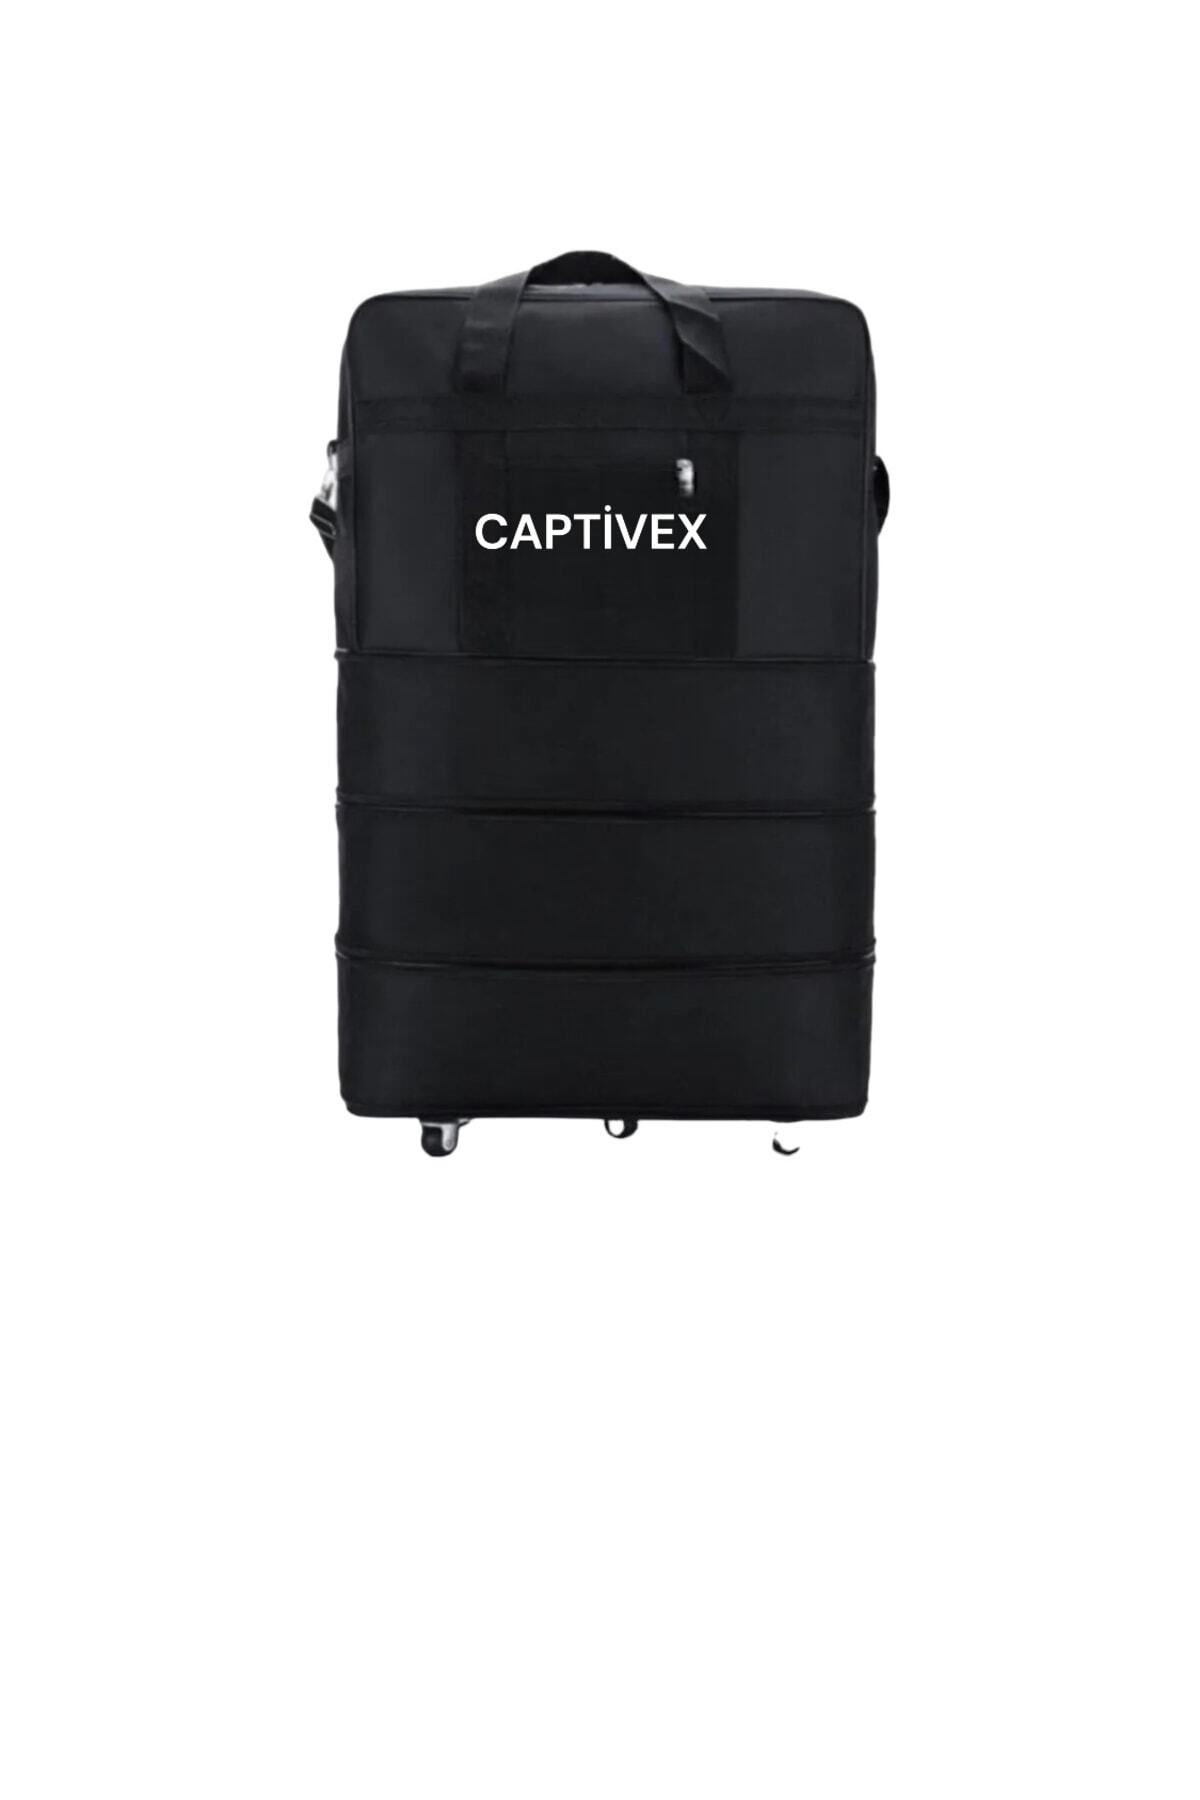 Captivex 3 Katlı Açıla Bilir Fermuarlı Altı Tekerlekli Valiz Renk Siyahtır